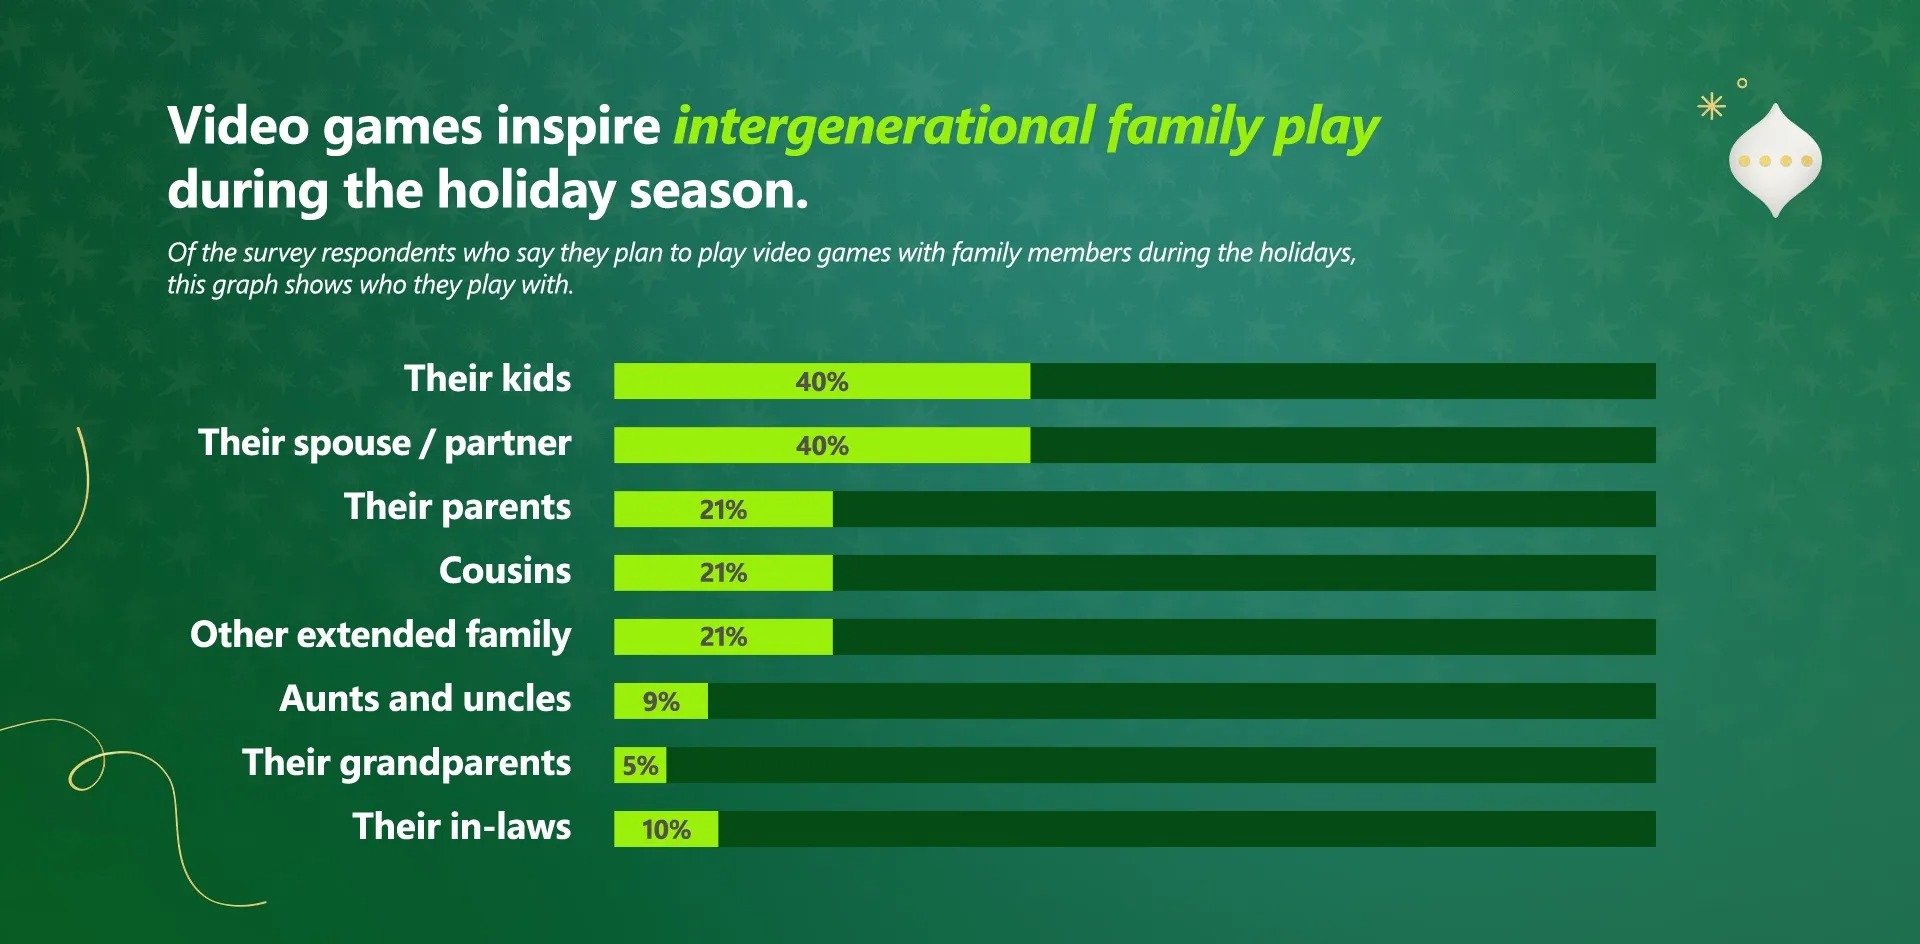 Estudio de Xbox revela que las familias consideran que jugar videojuegos es una actividad que desean hacer durante las fiestas de fin de año (Xbox)